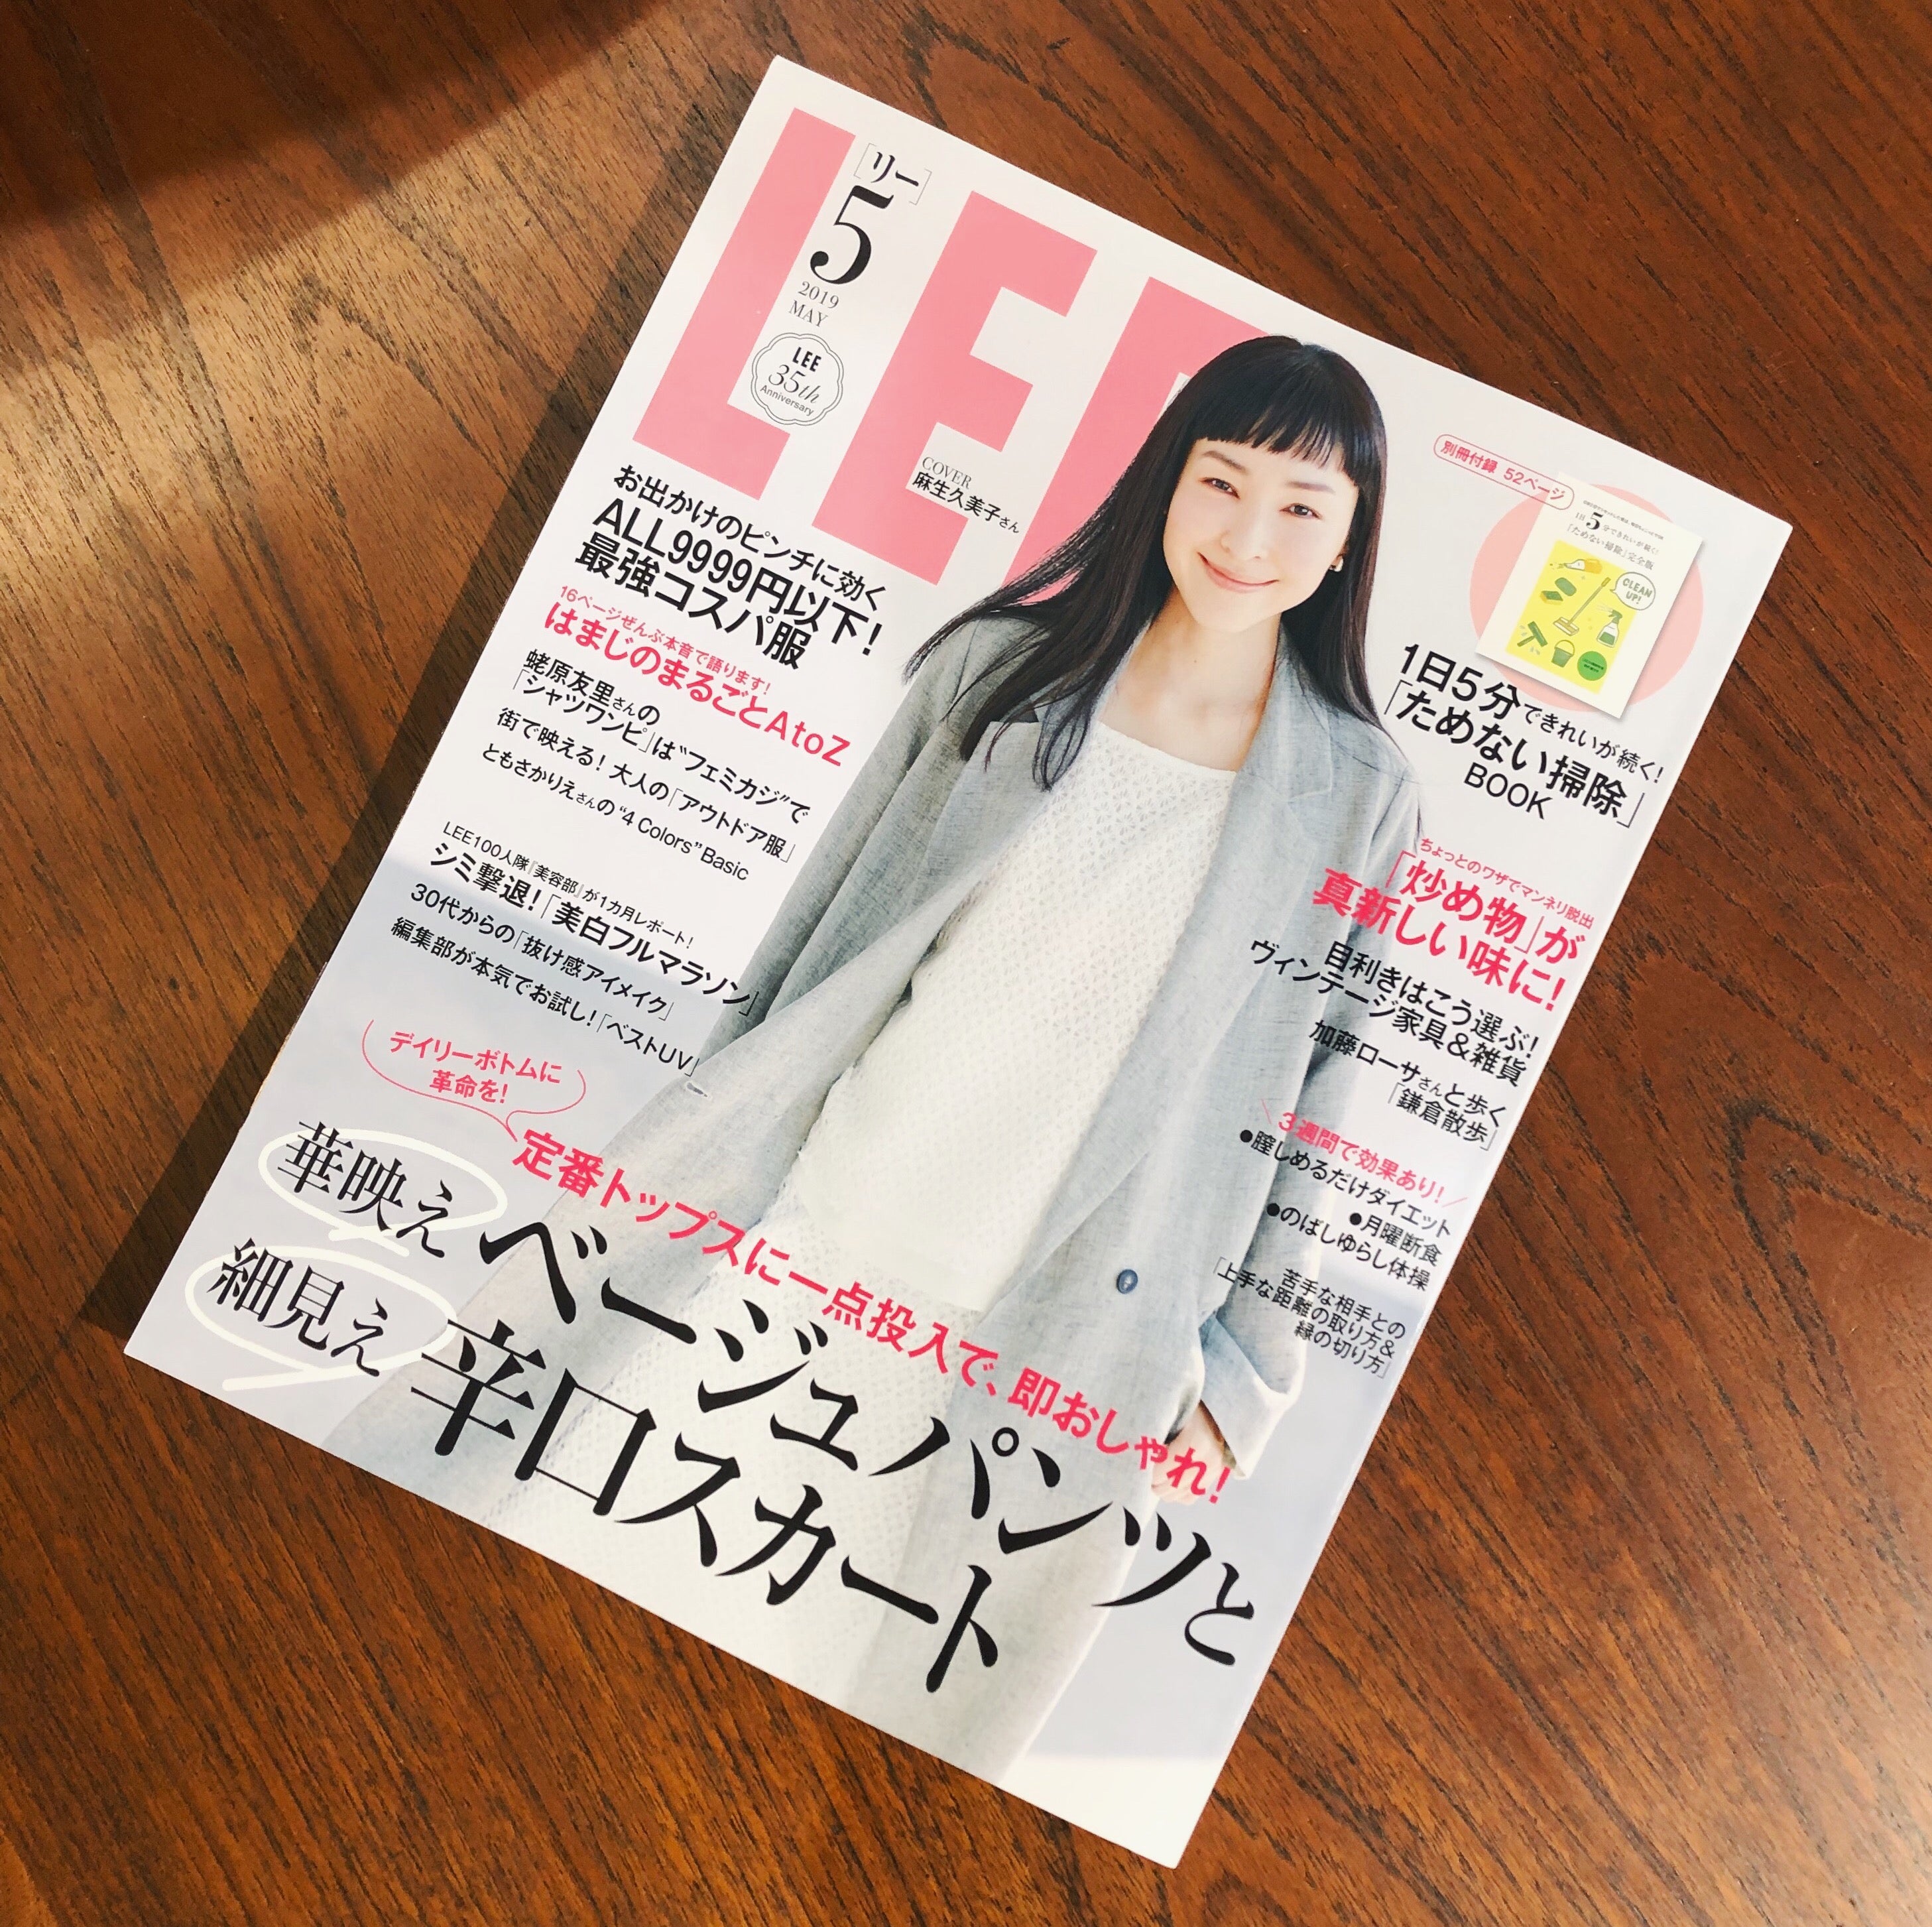 集英社 LEE 2019年5月号にてTOKYO RECYCLE imption祖師ヶ谷大蔵店をご紹介いただきました。